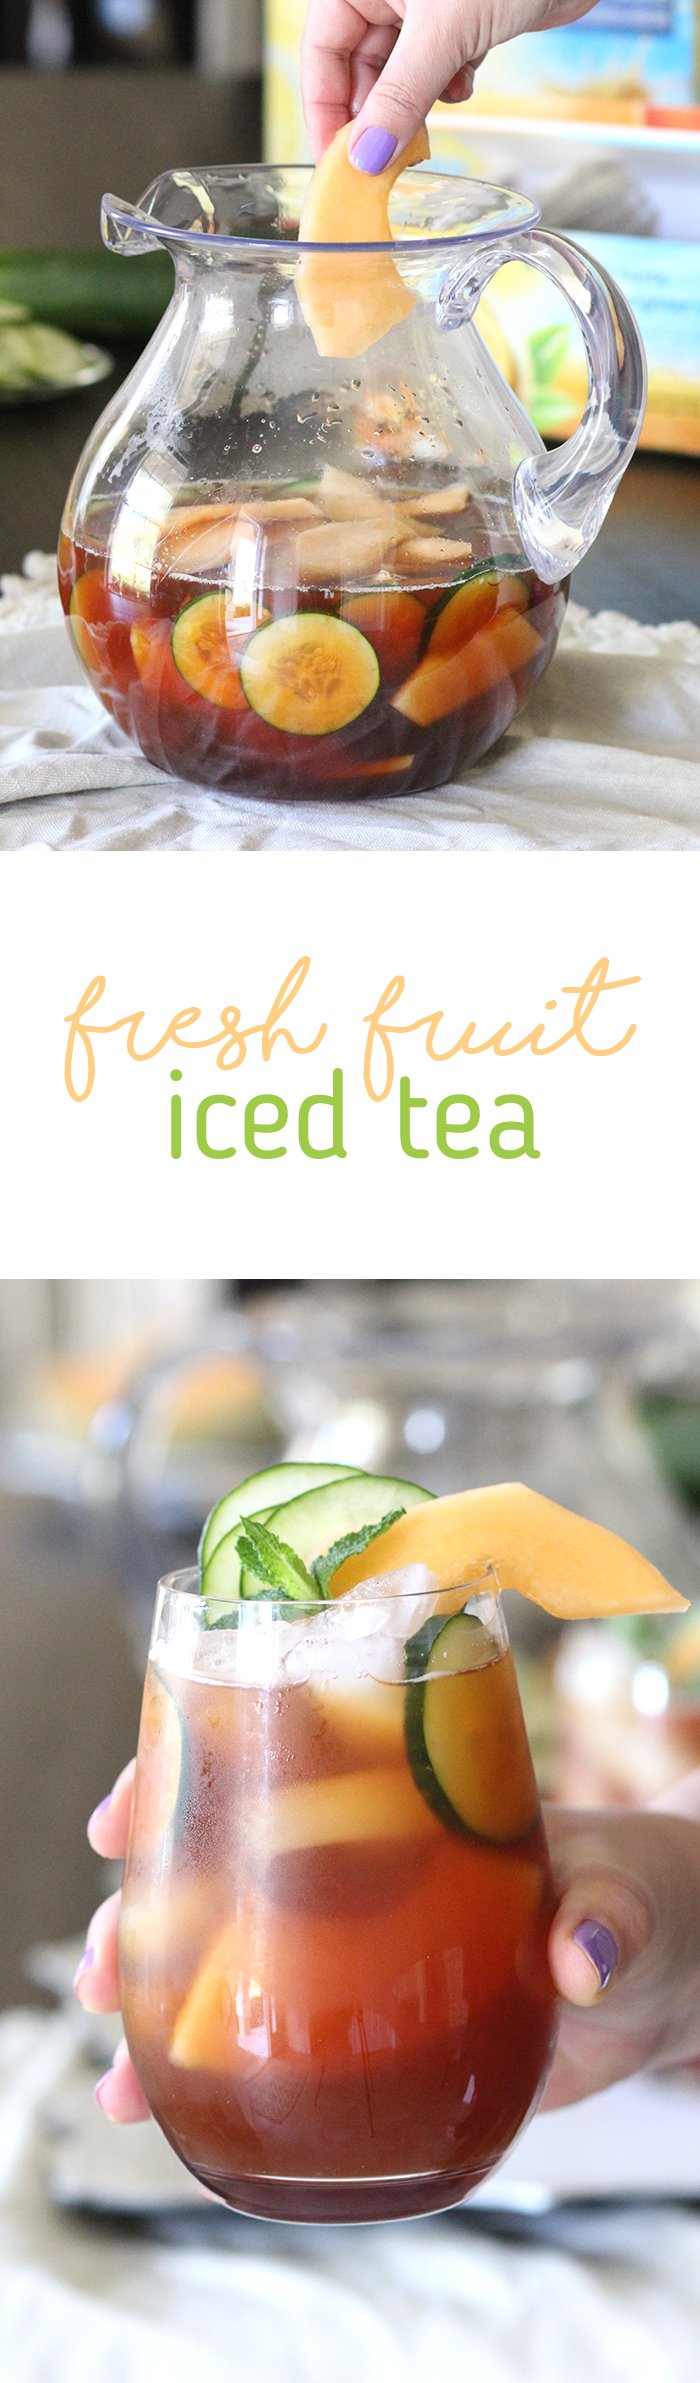 how to make fresh fruit iced tea